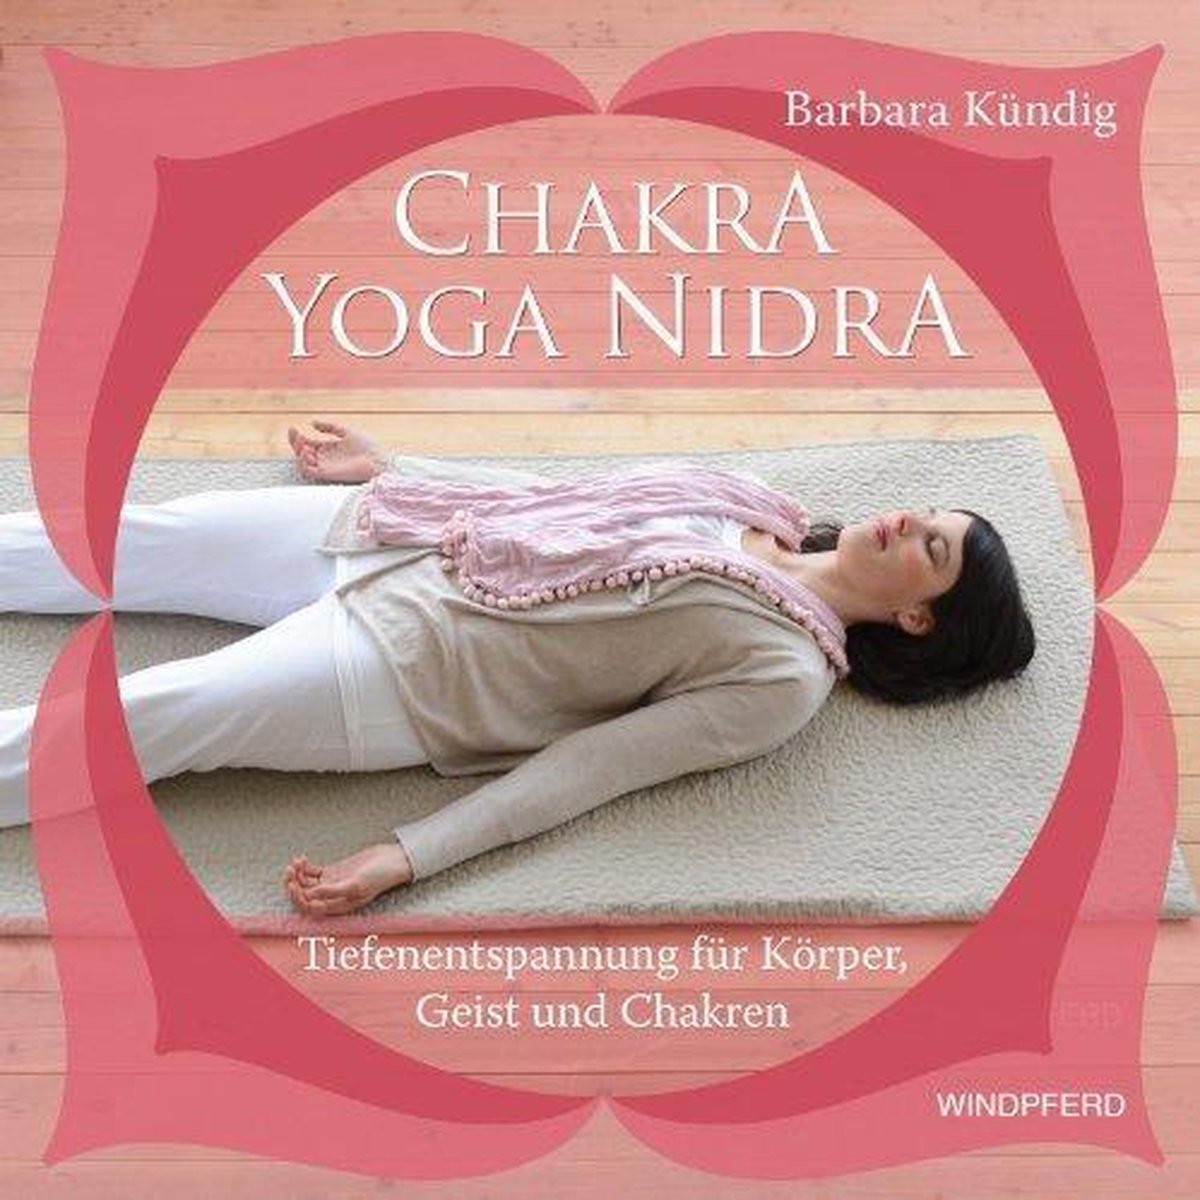 Chakra-Yoga-Nidra: Tiefenentspannung für Körper, Geist und Chakren